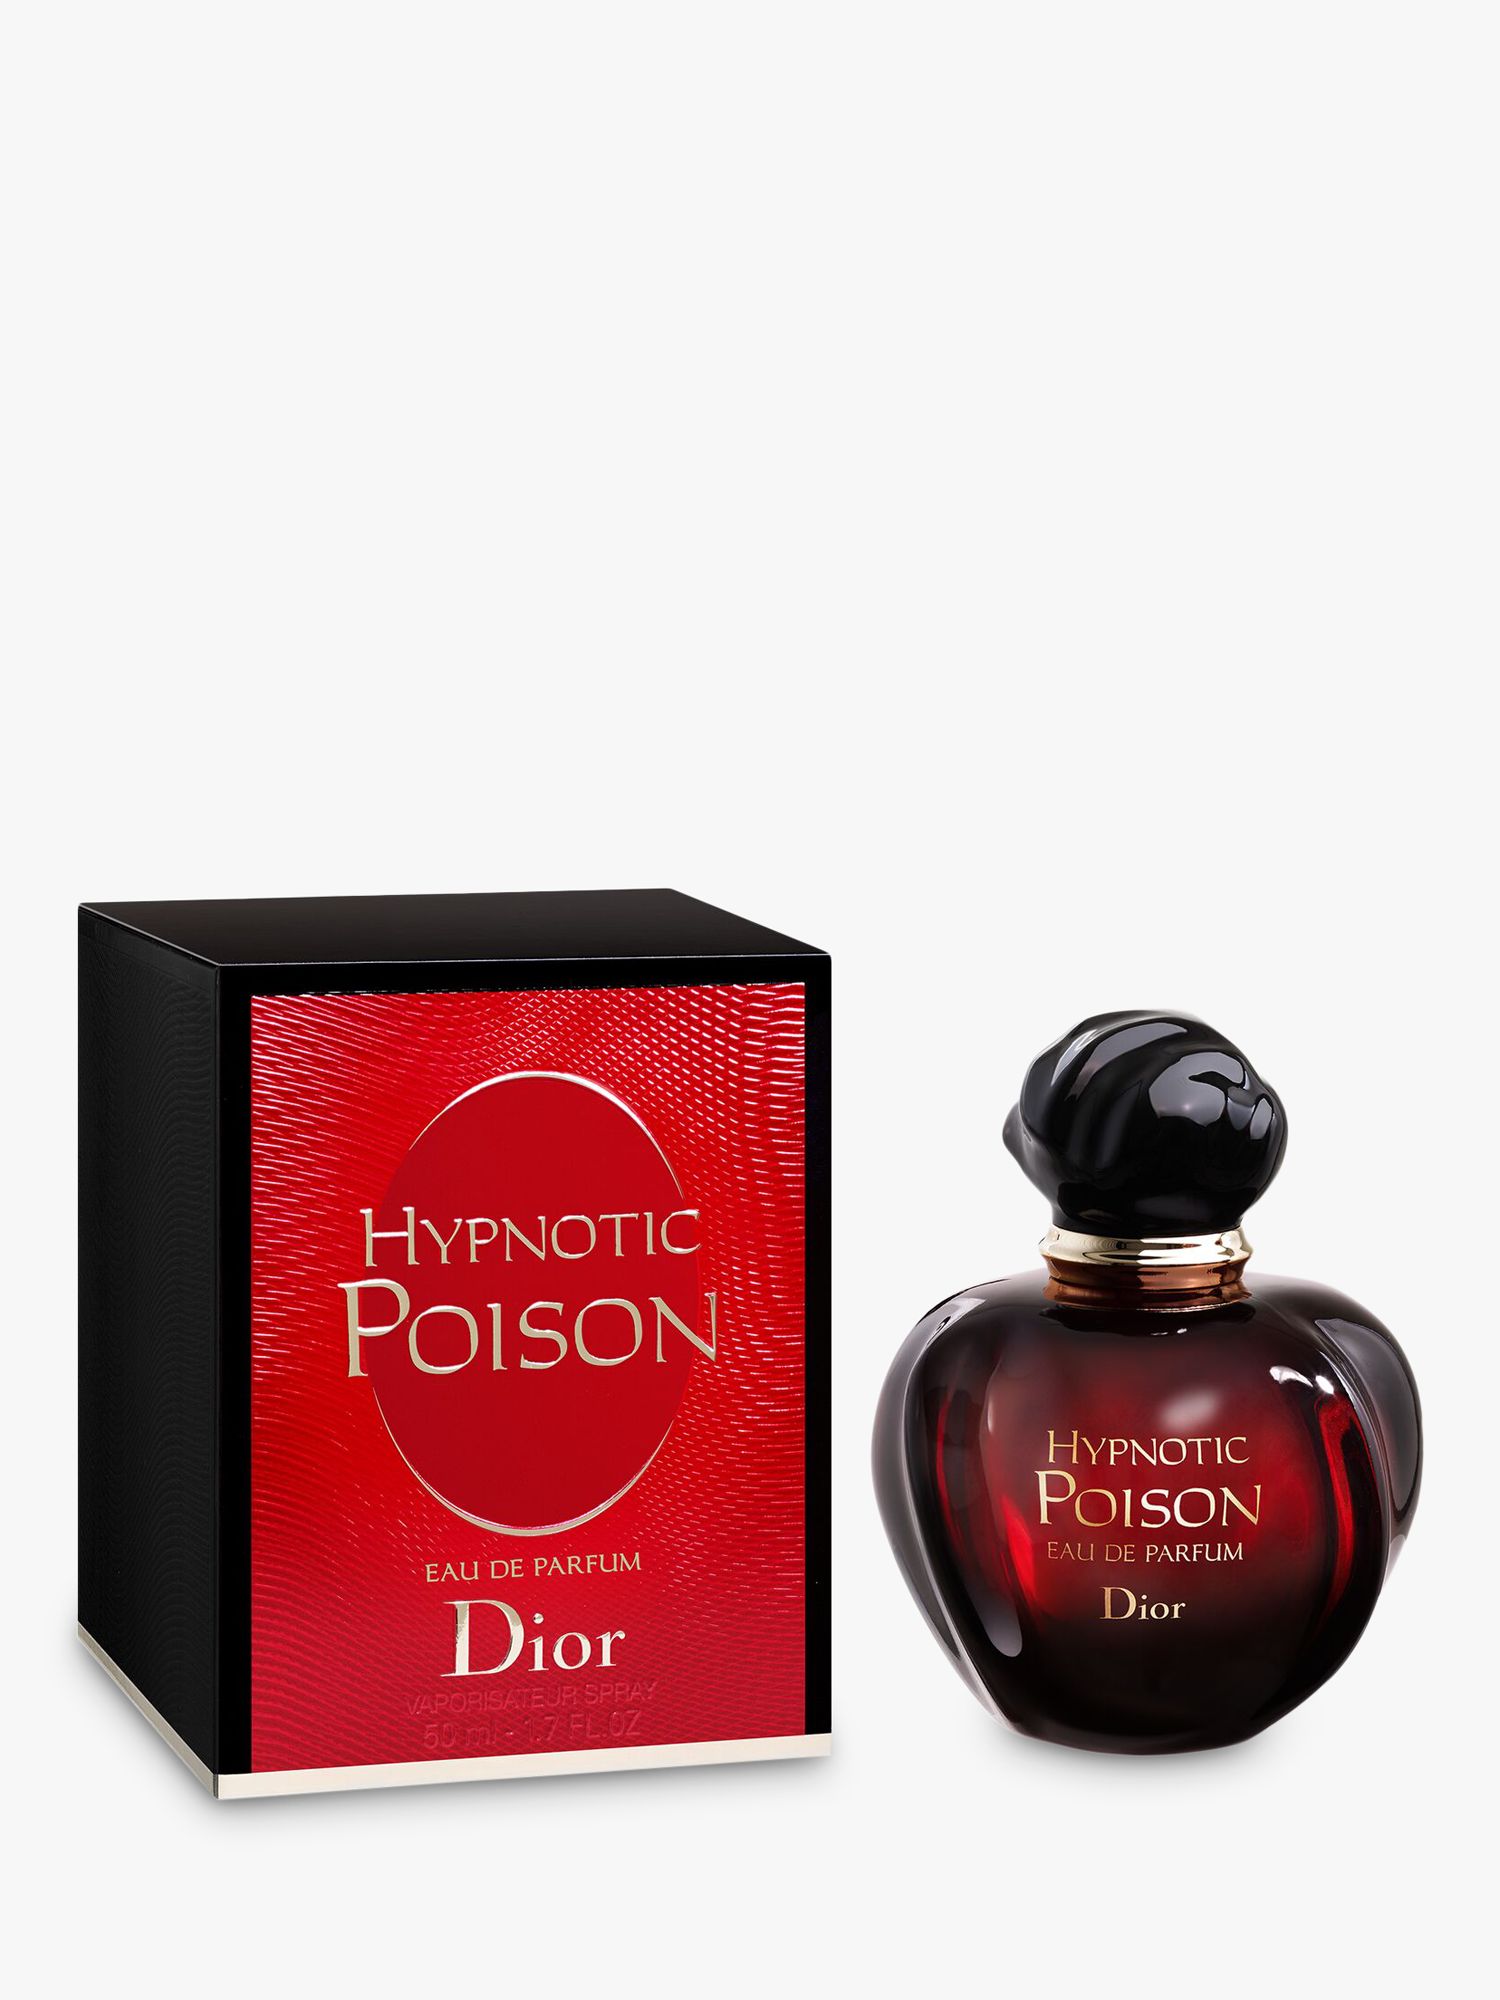 Dior Hypnotic Poison Eau de Parfum at 